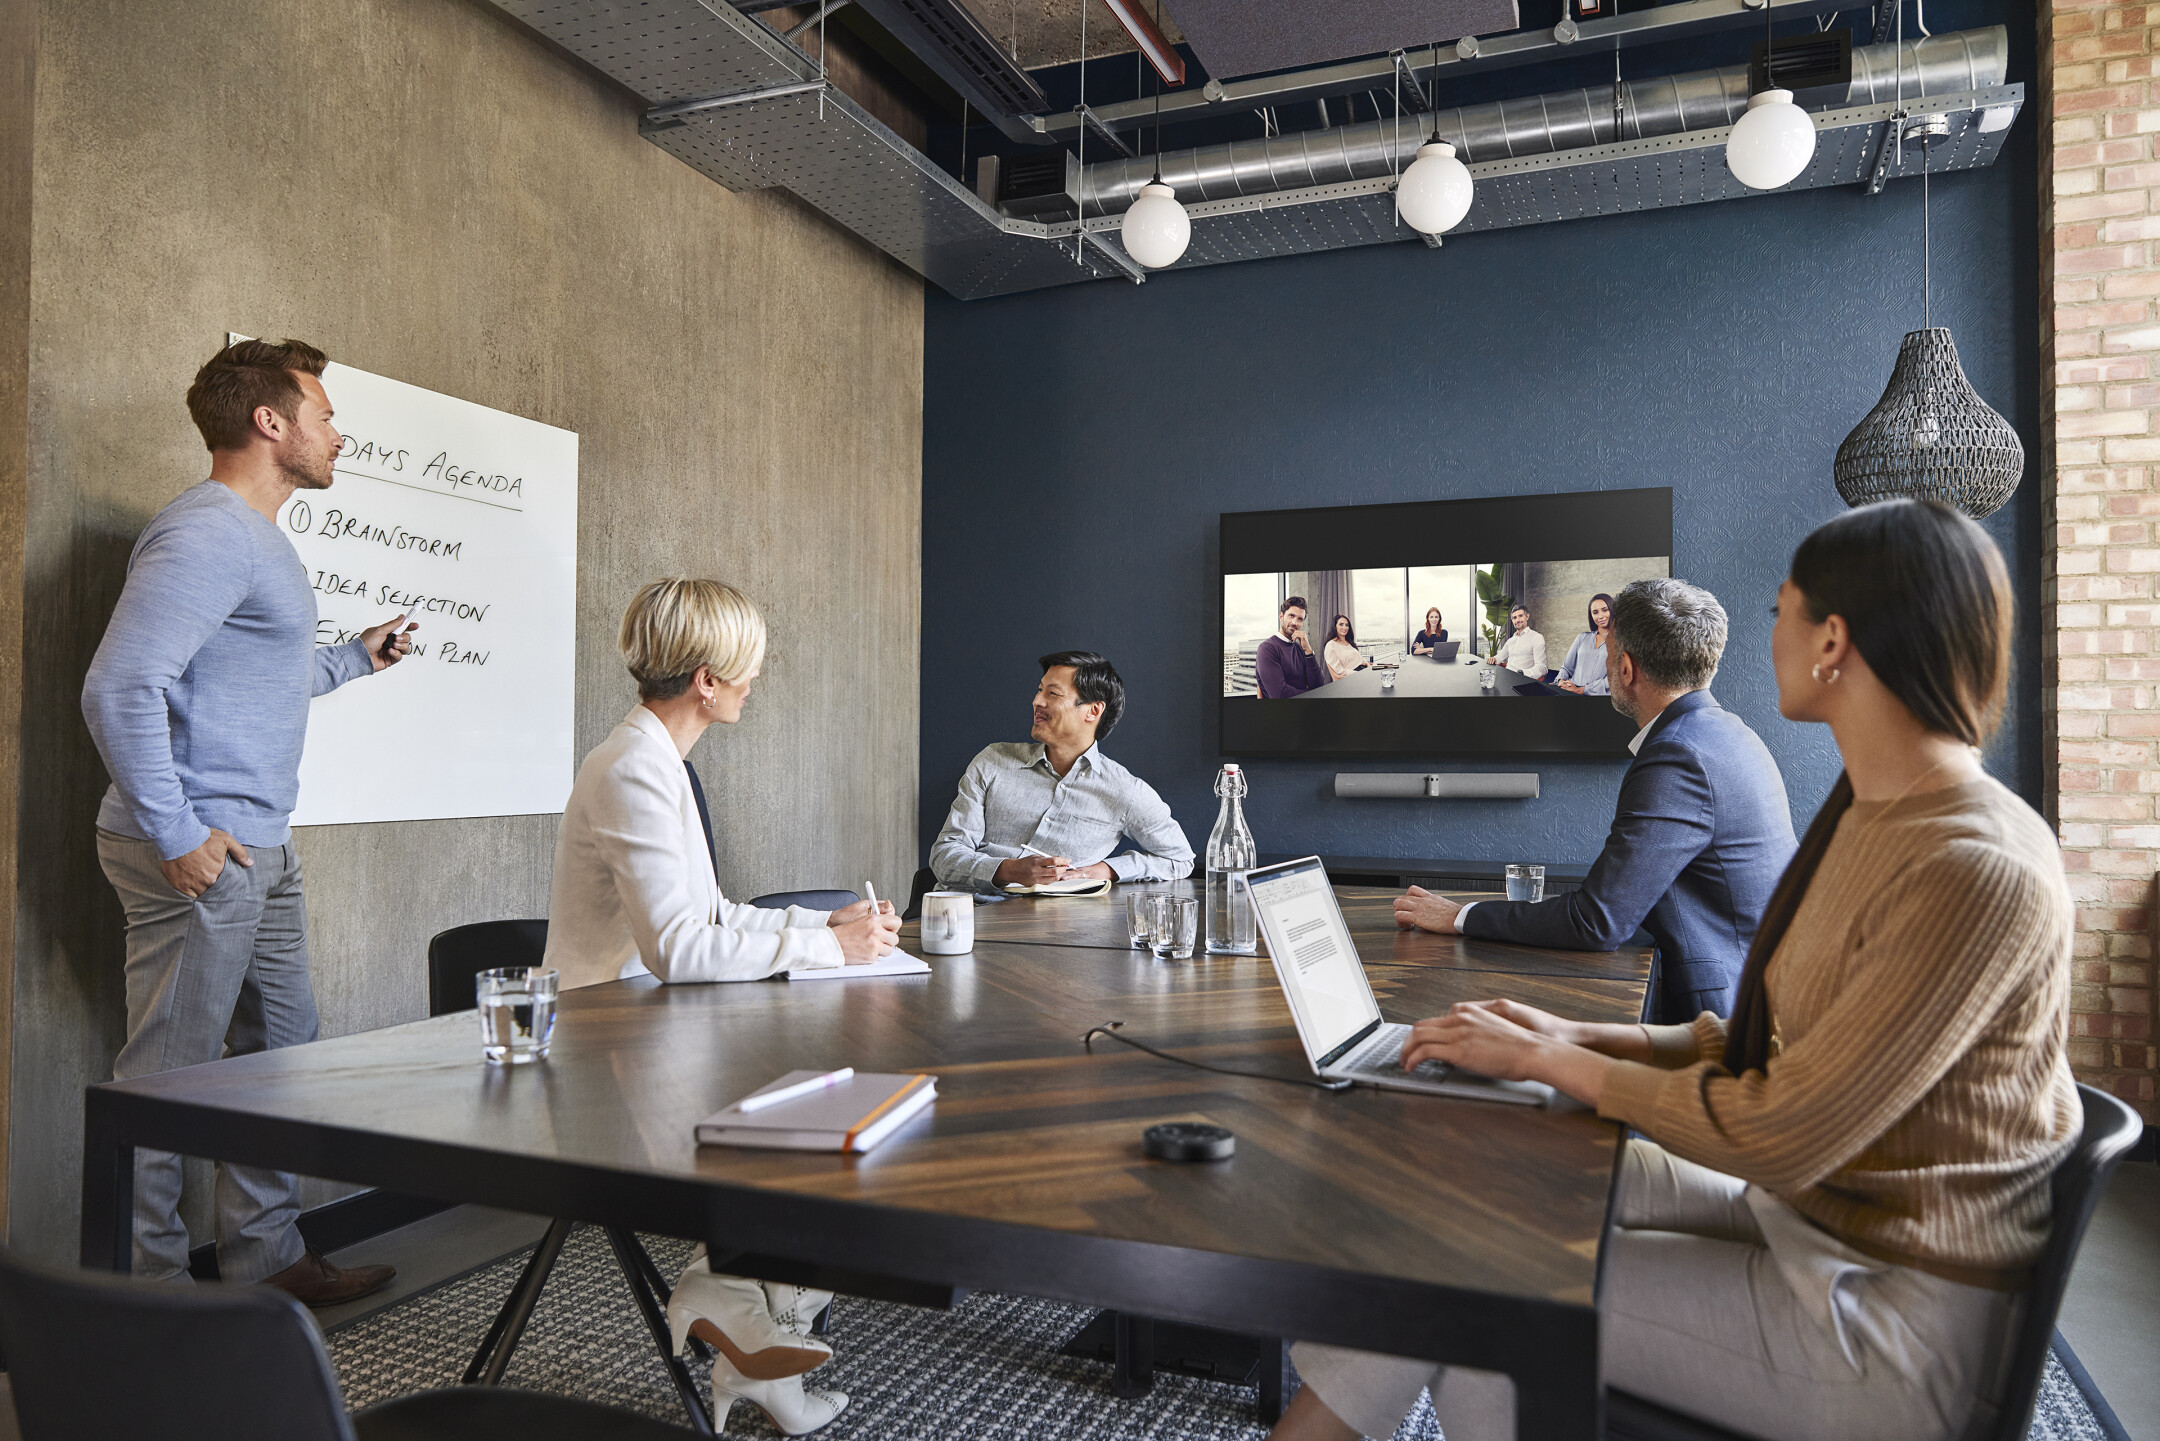 Auf dem Bild sind 5 Personen zu sehen, die sich in einem Videokonferenzraum befinden und sich in einem digitalen Meeting mit weiteren Kollegen unterhalten.